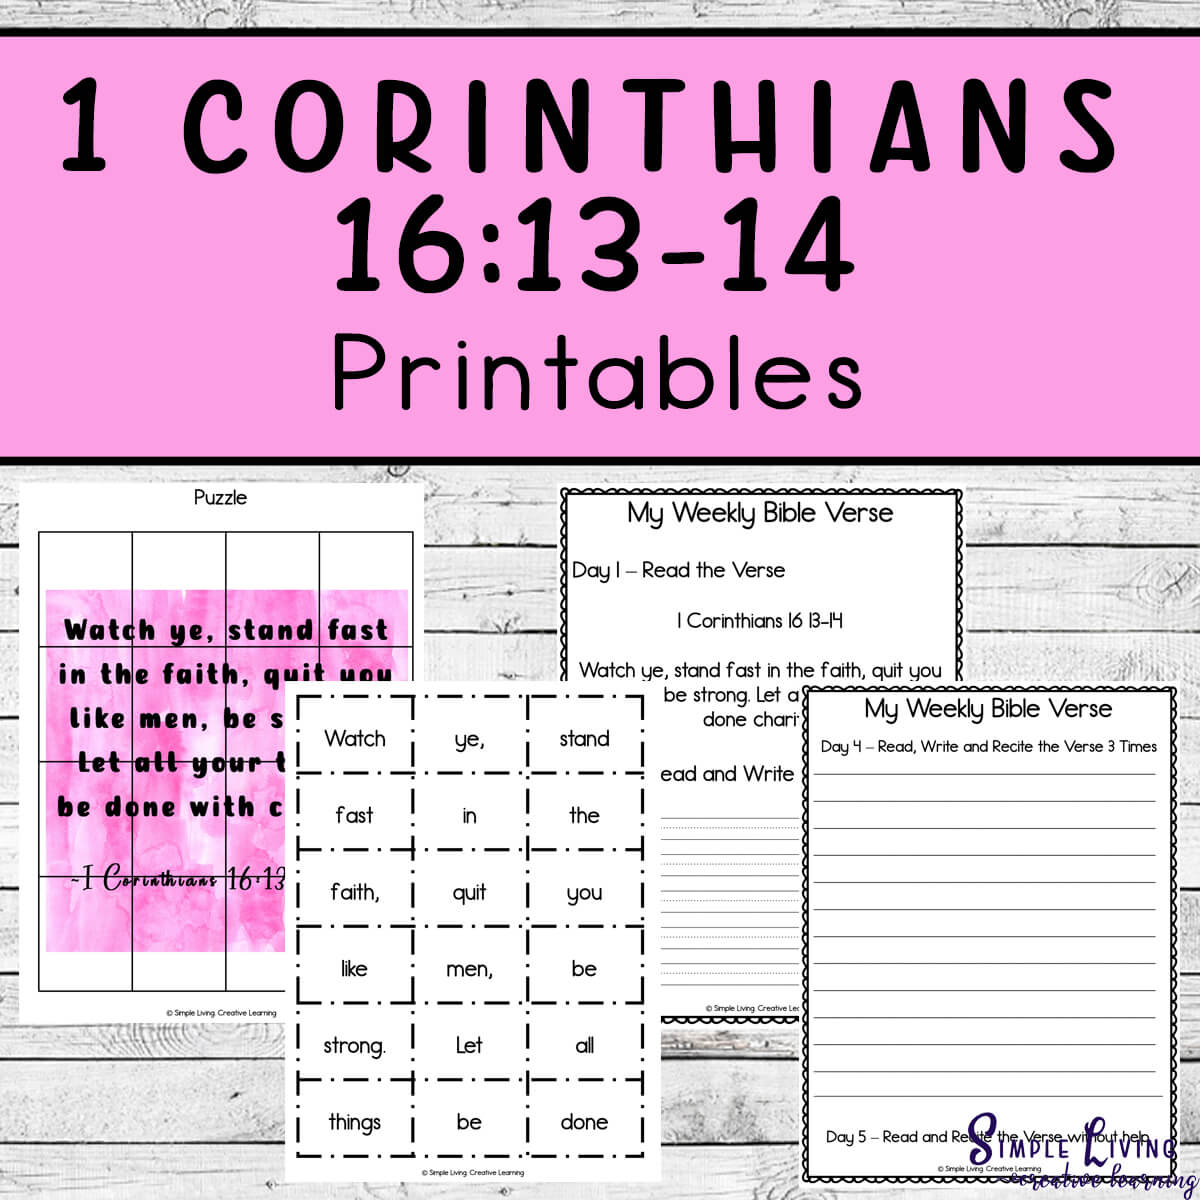 1 Corinthians 16:13-14 Printables - four pages